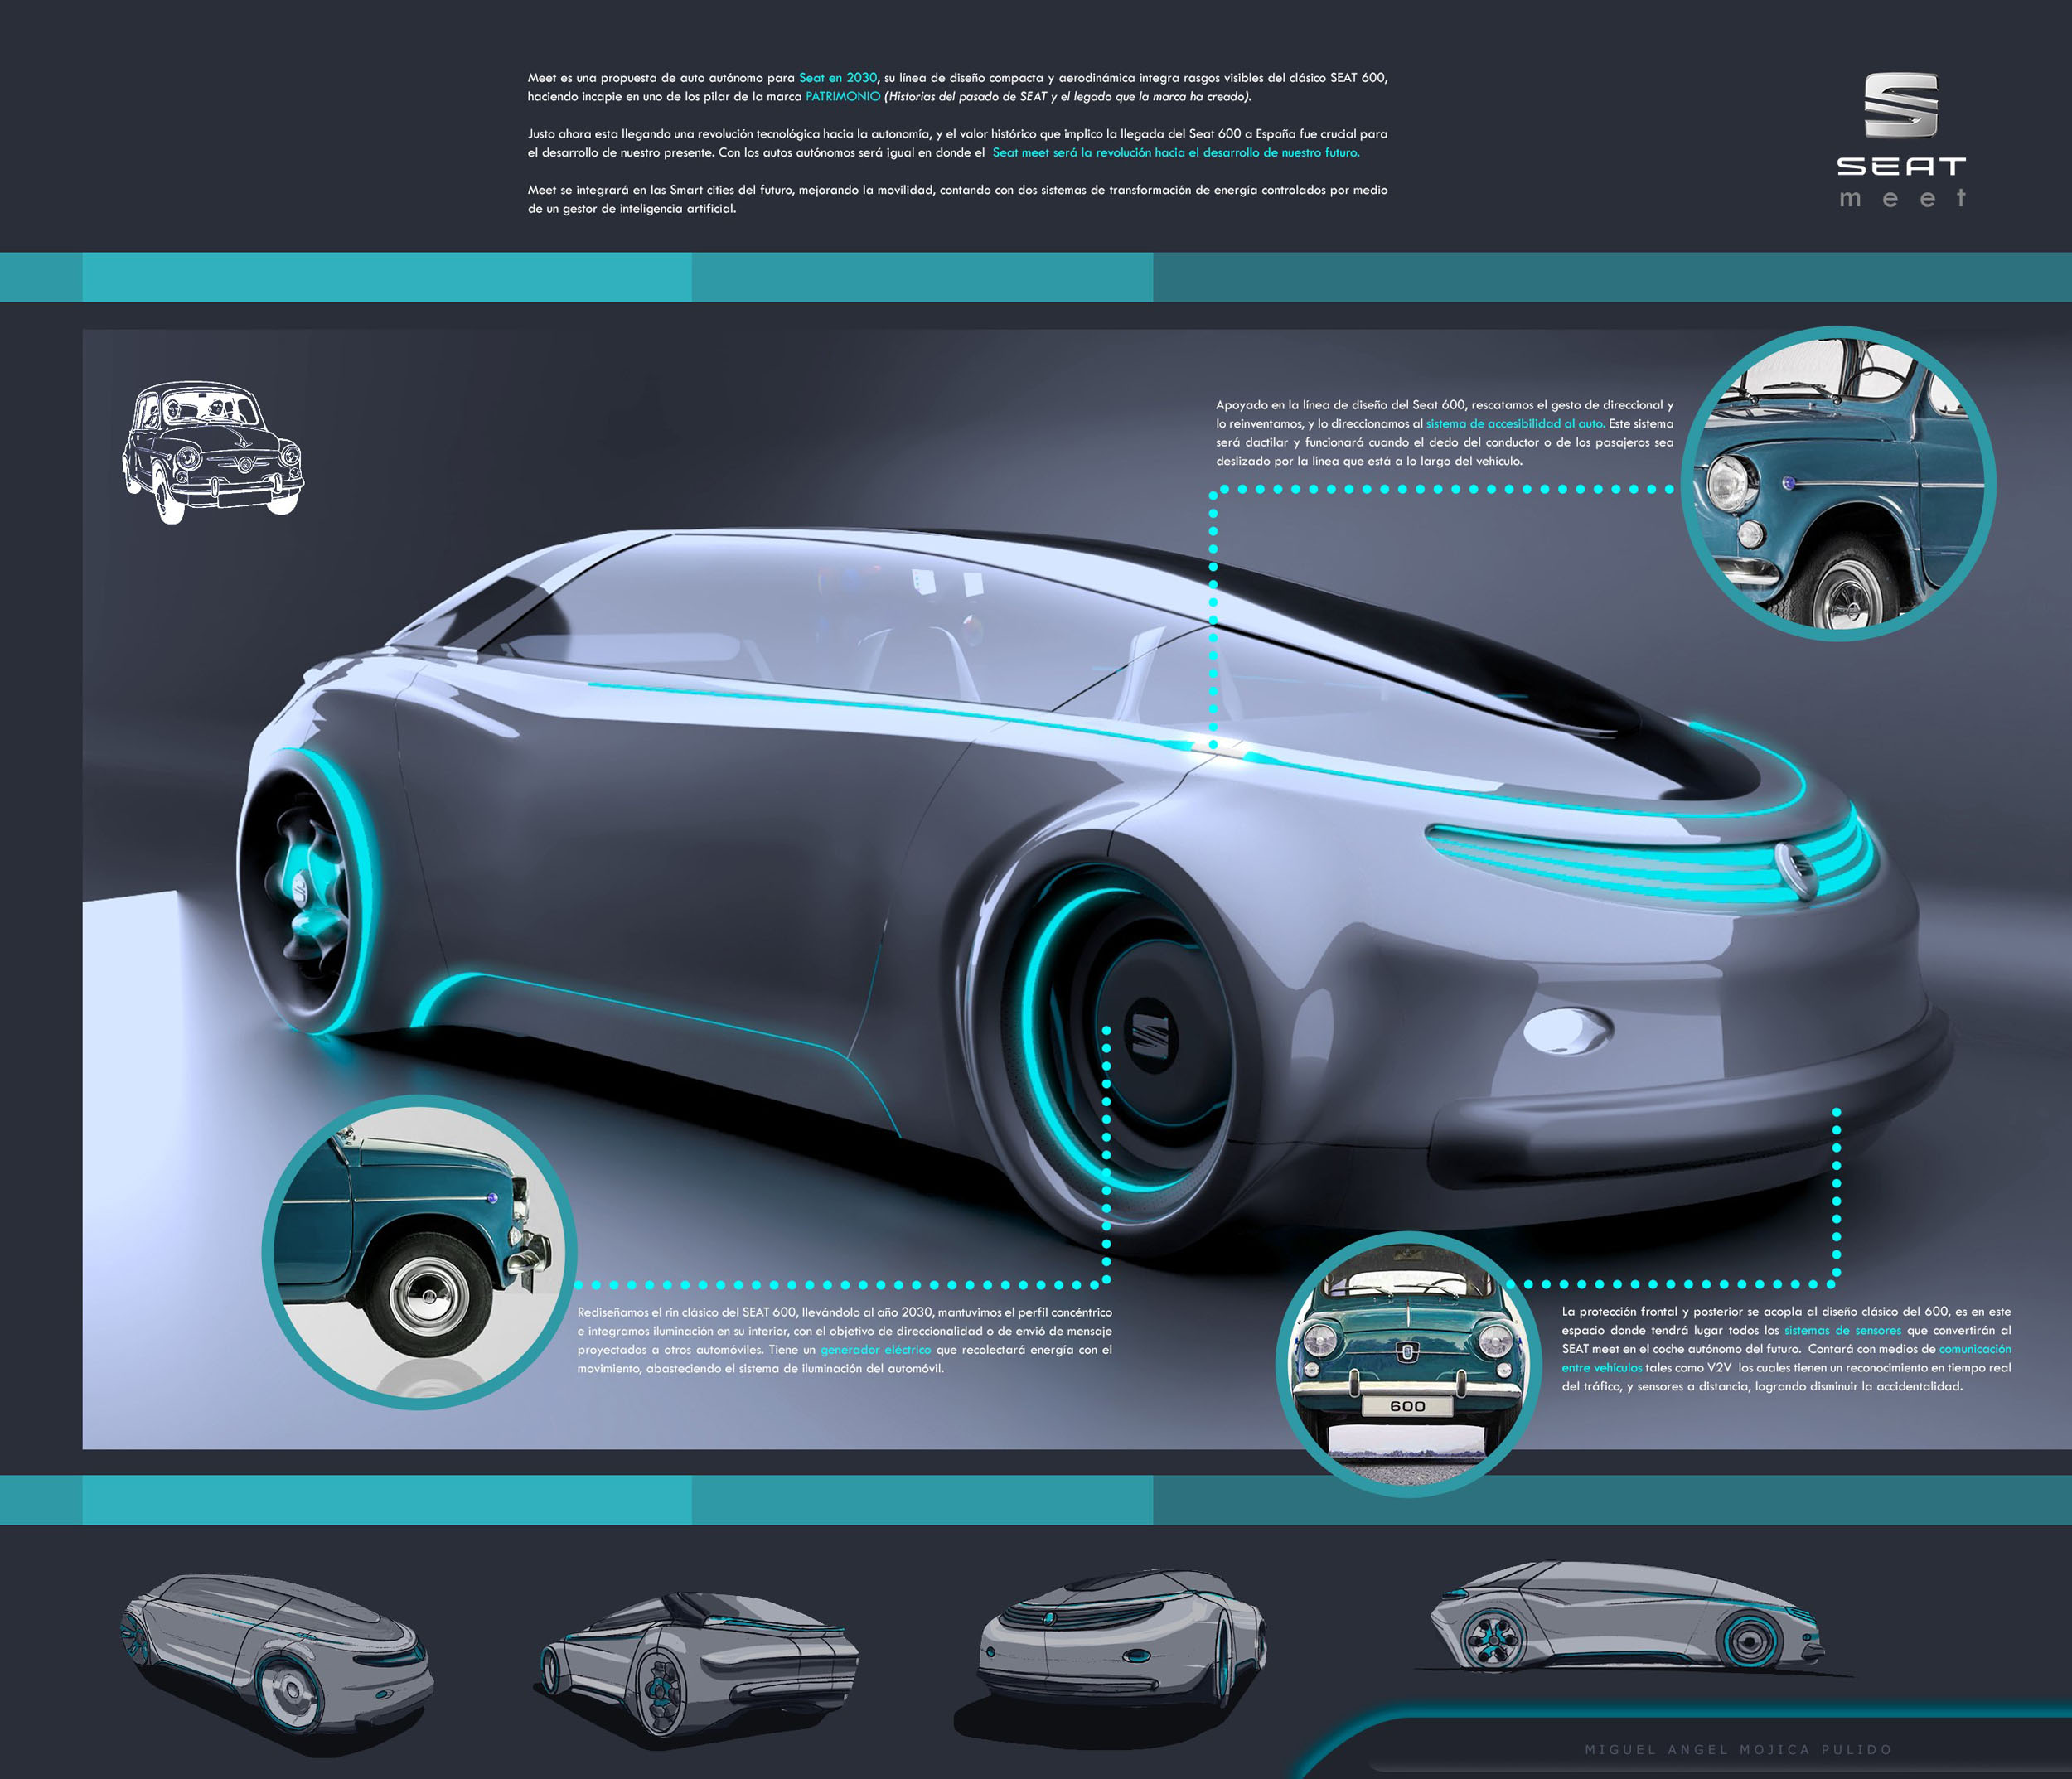 Voici MEET, la future voiture autonome de SEAT ! (Vidéo sur Bidfoly.com) By DETOURS Seat-meet-autonomous-car-concept-by-miguel-mojica6